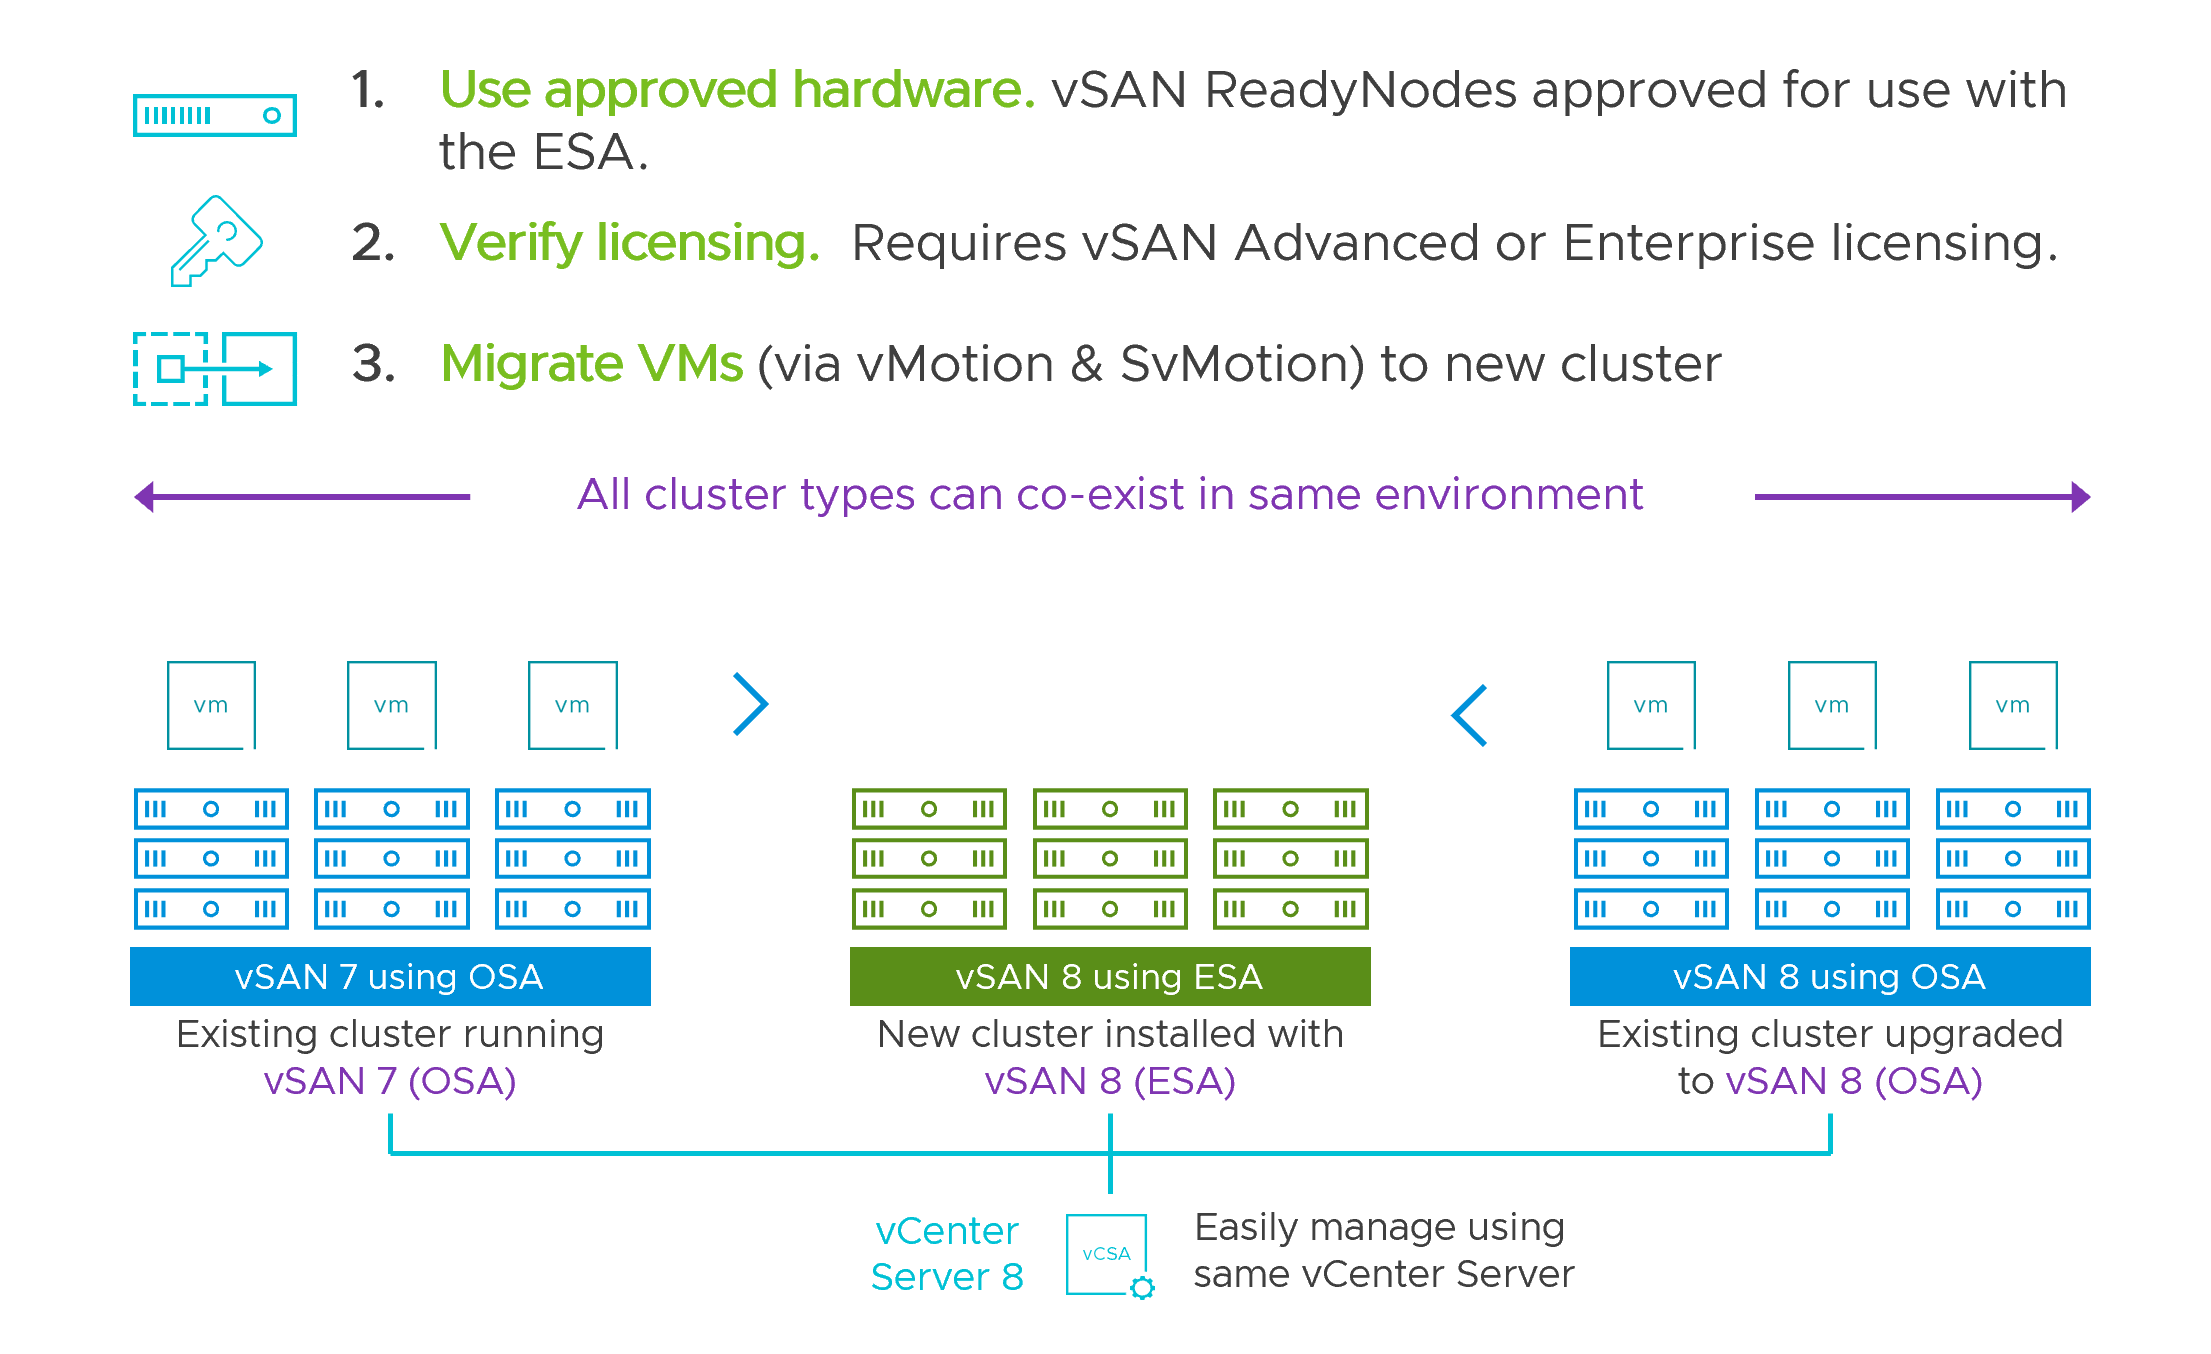 VMware VSAN 8 Enterprise Plus CD Key (Lifetime / 5 Devices)